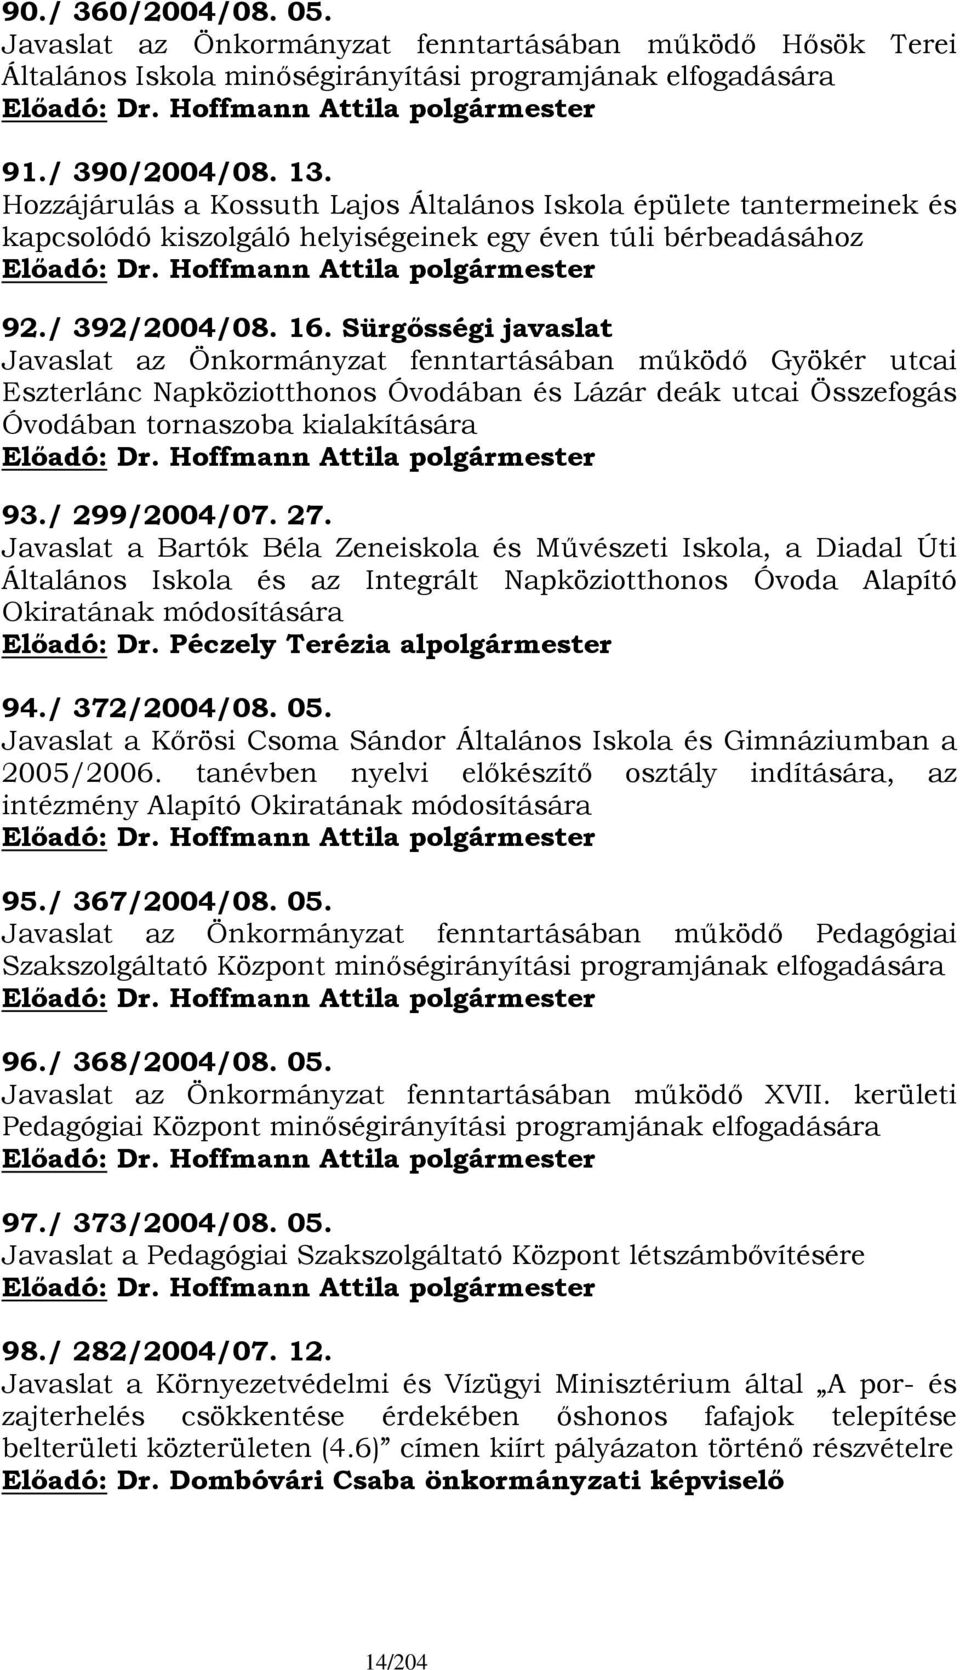 Sürgősségi javaslat Javaslat az Önkormányzat fenntartásában működő Gyökér utcai Eszterlánc Napköziotthonos Óvodában és Lázár deák utcai Összefogás Óvodában tornaszoba kialakítására 93./ 299/2004/07.